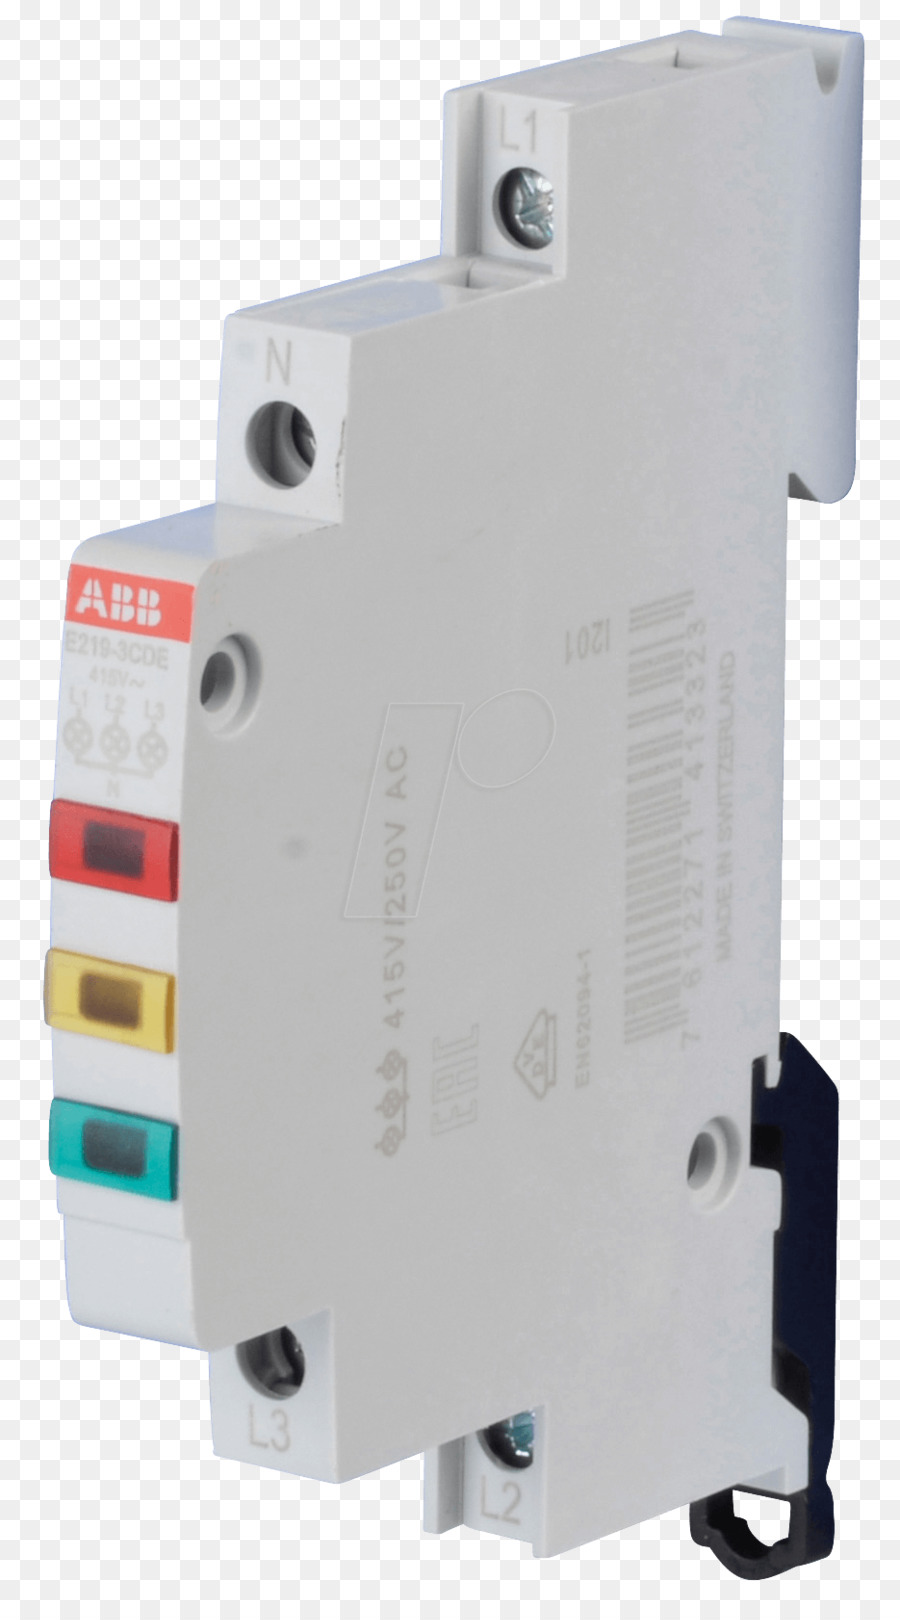 ABB Indicatore luminoso per la scheda di distribuzione E219-3 Gruppo ABB Interruttori Elettrici DIN rail - 